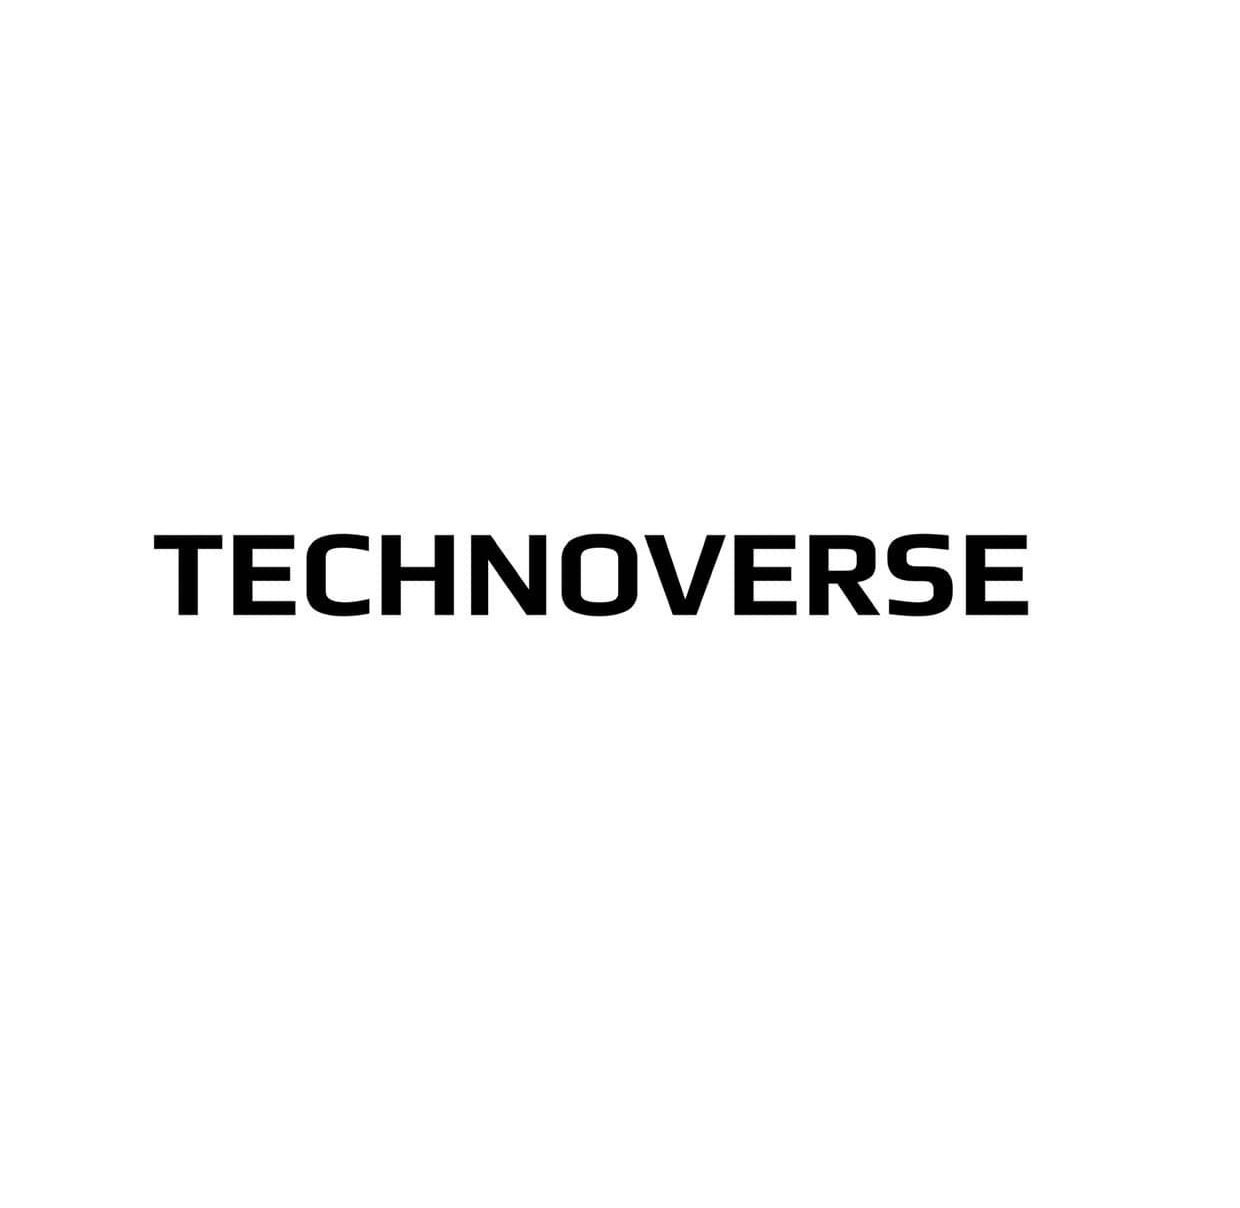 Technoverse company